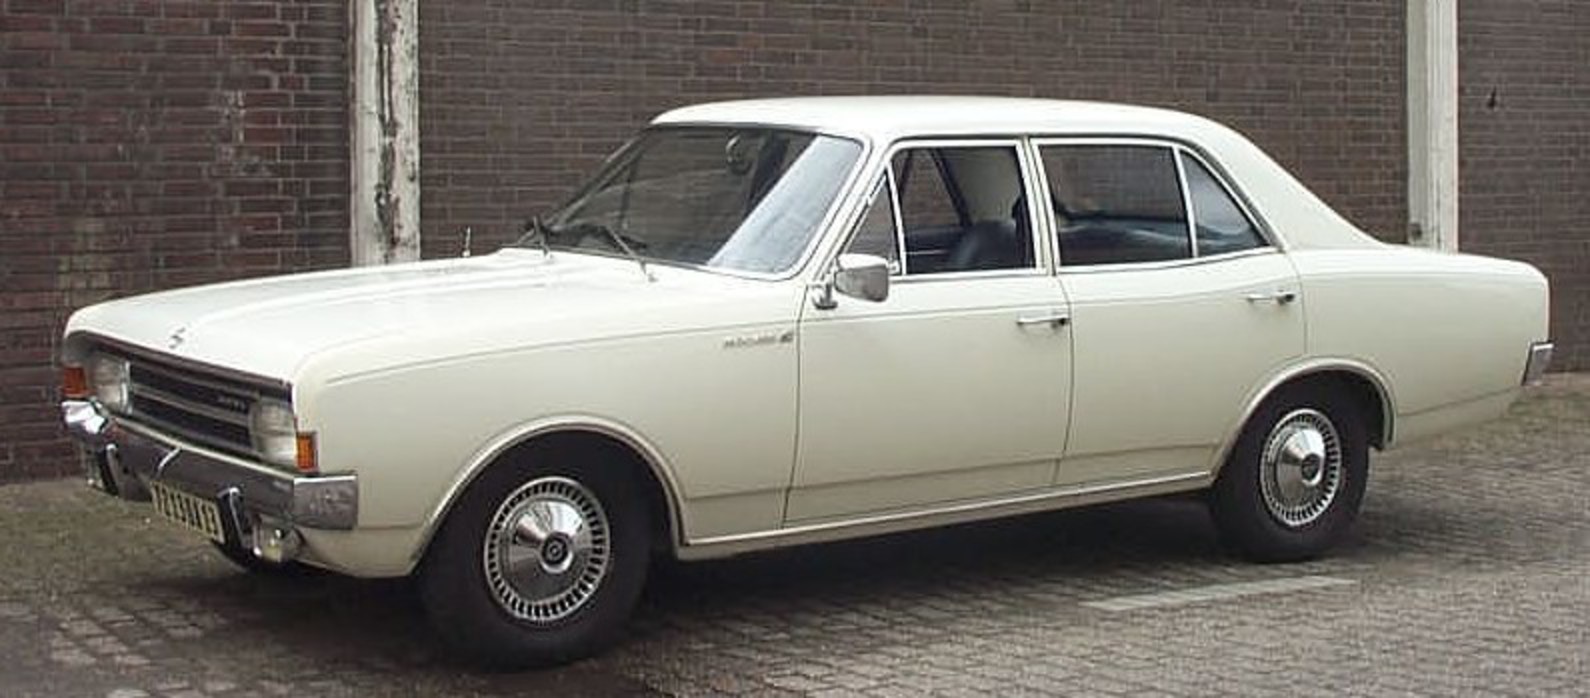 Opel_Rekord_C_1900_L_white_1967.jpg (795 Ã — 349 pixels, taille du fichier: 83 Ko,